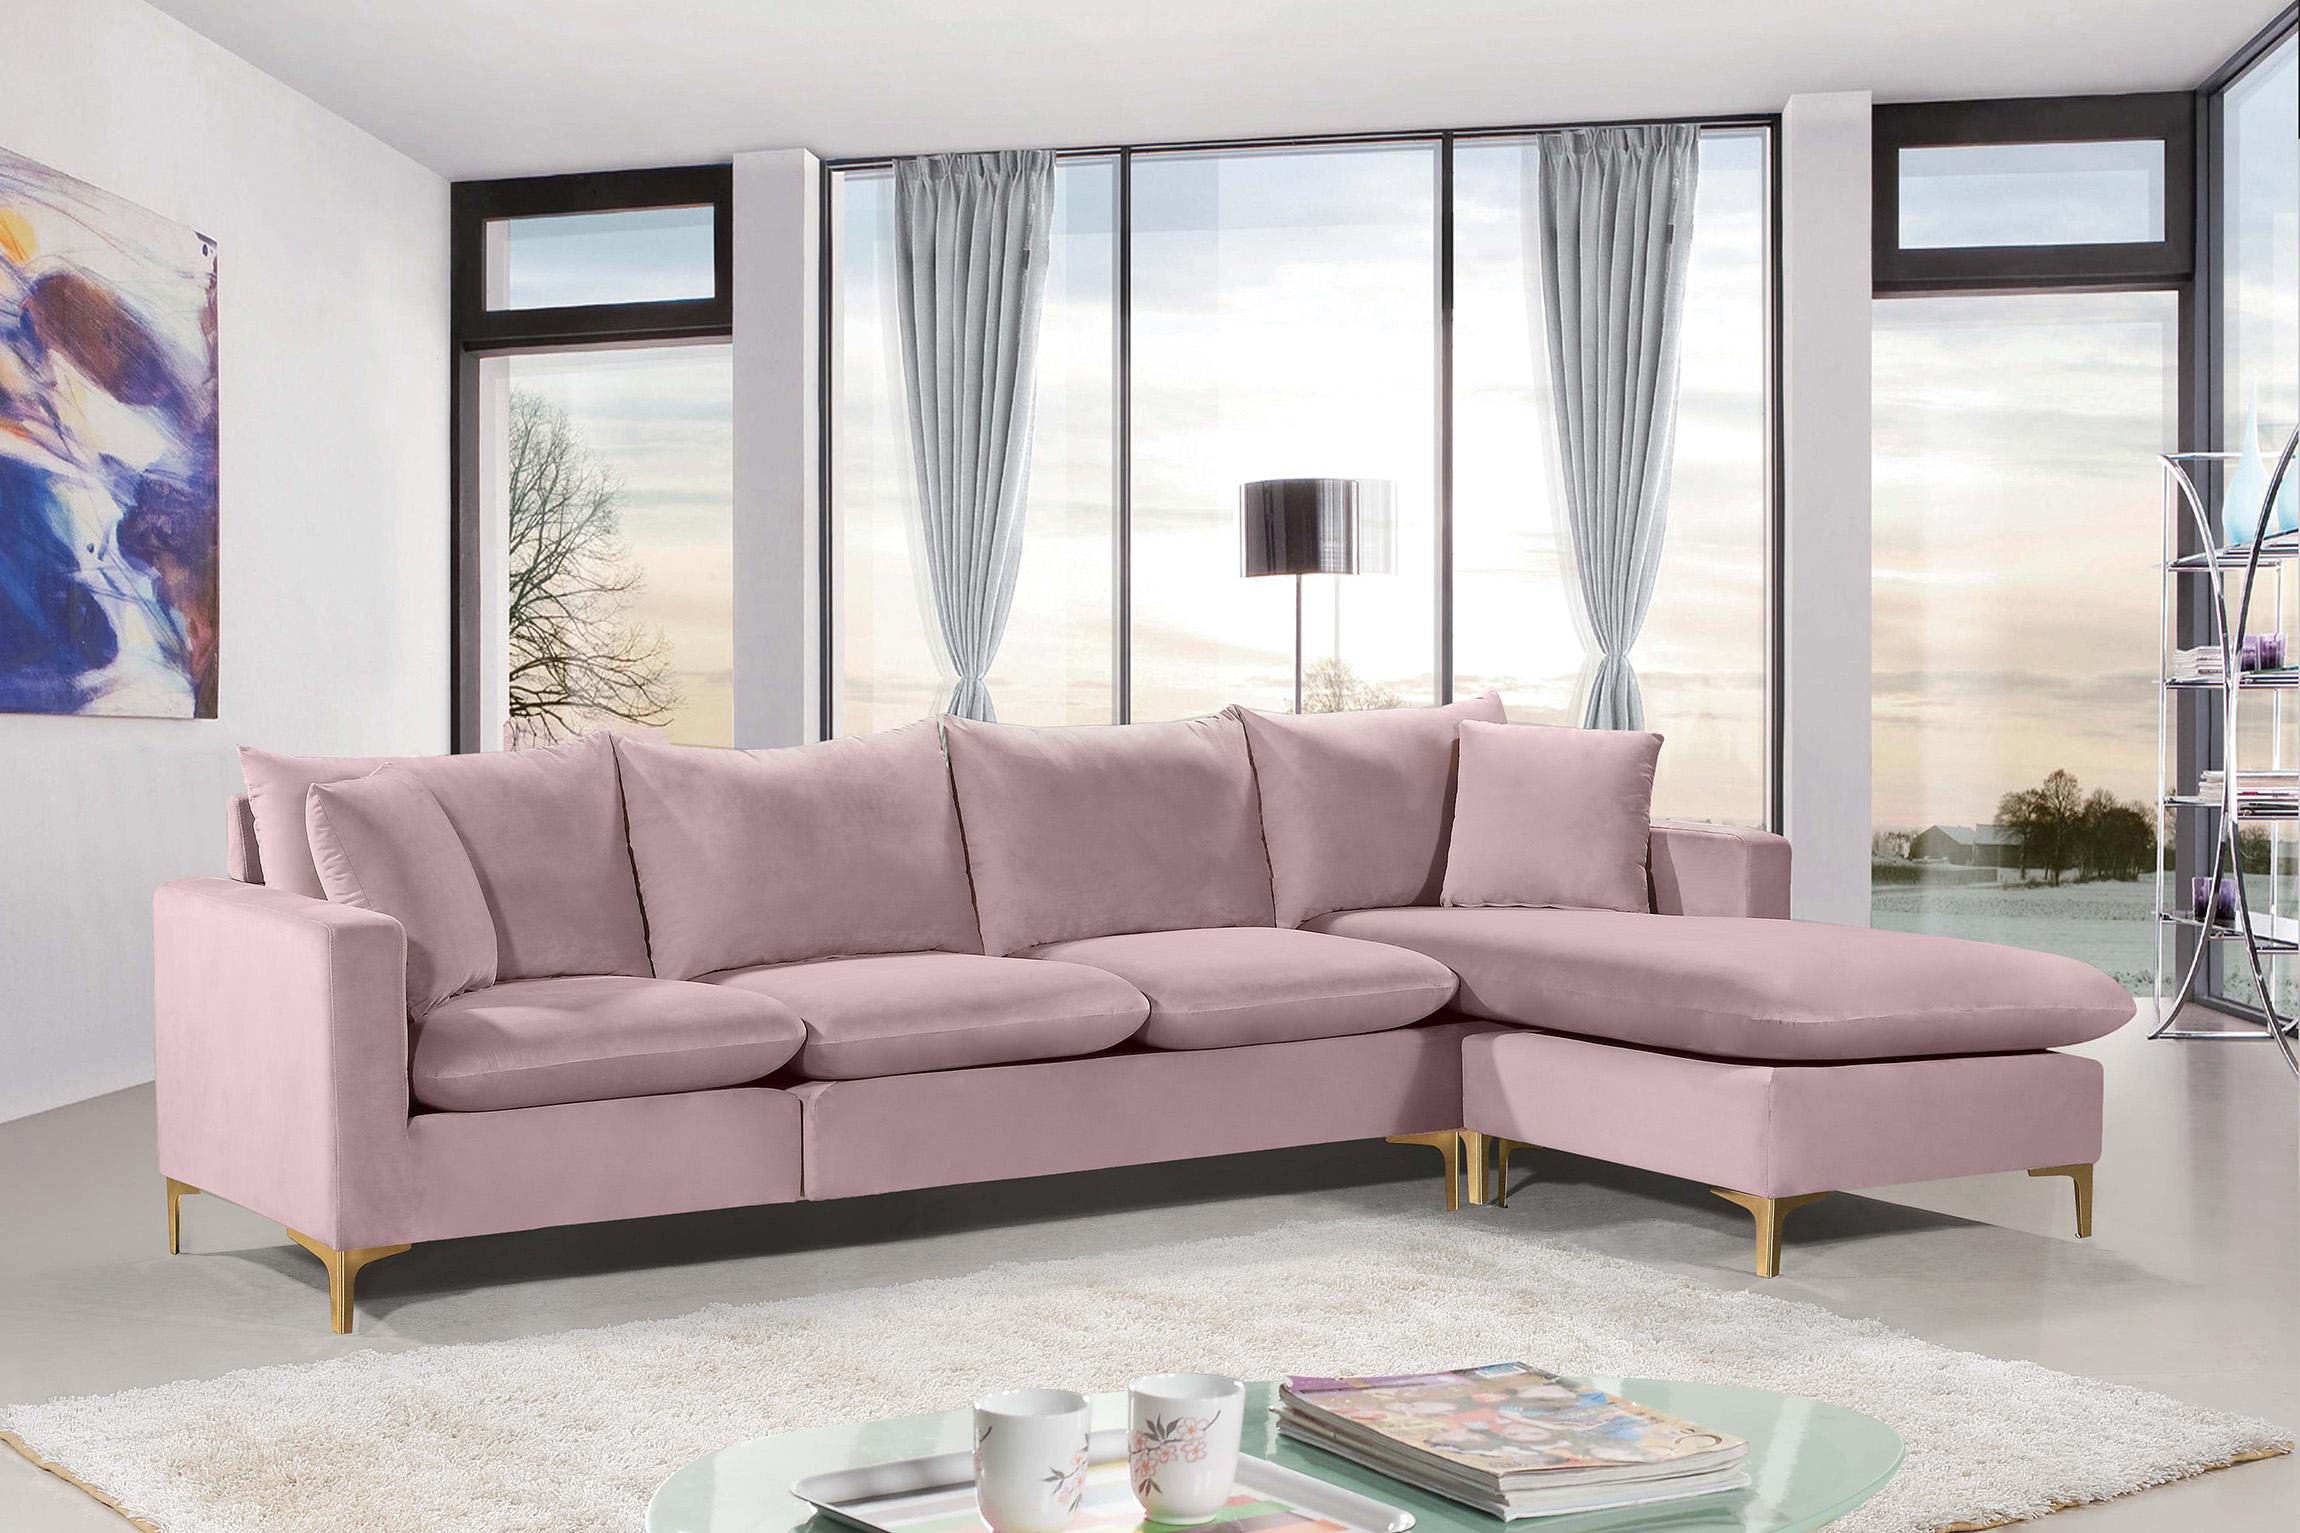 

    
Meridian Furniture Naomi 636Pink Sectional Sofa Pink 636Pink-Sectional
